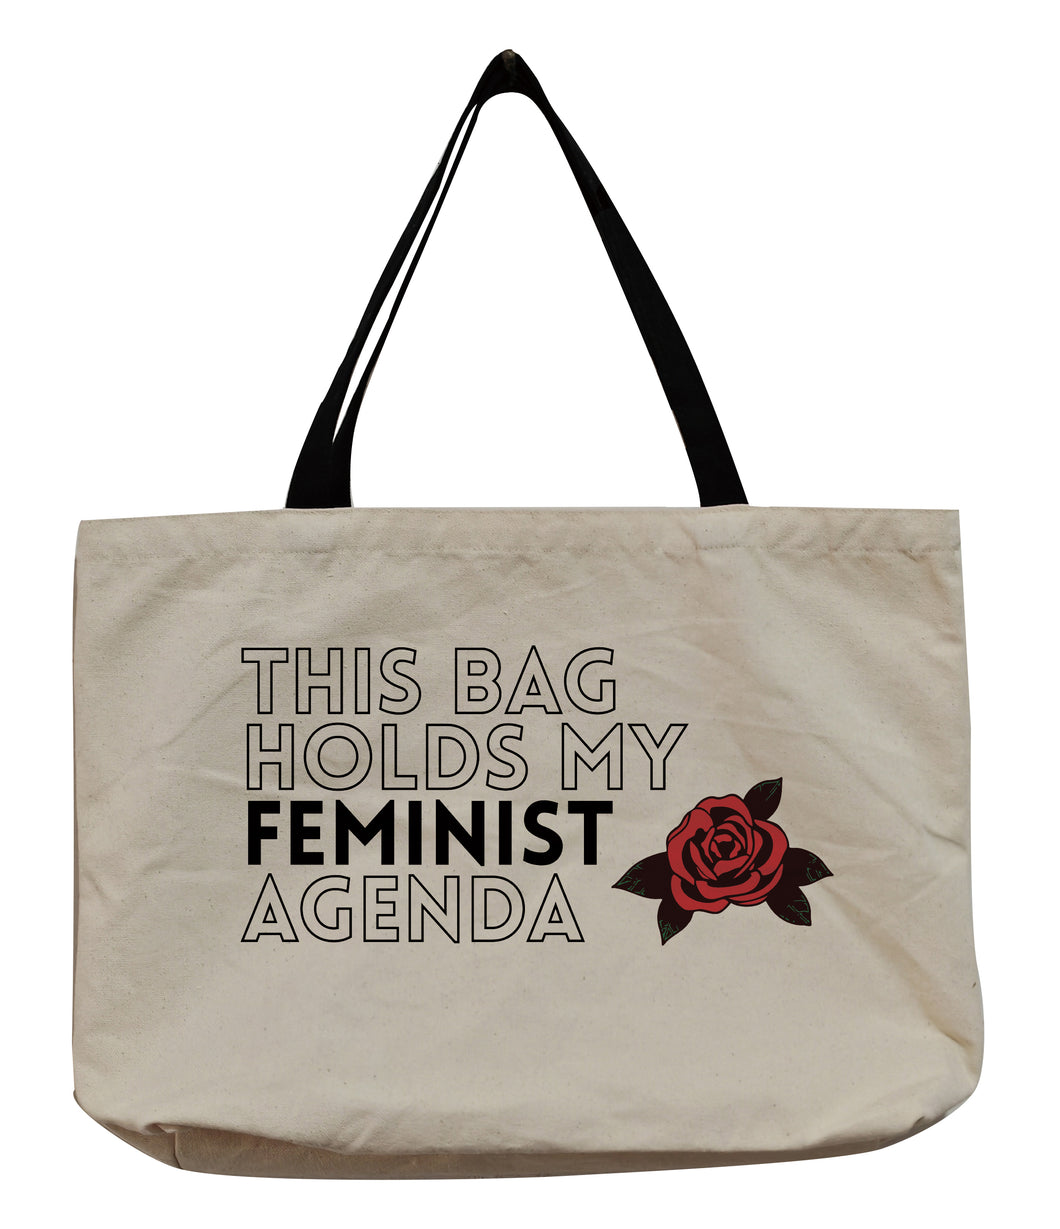 My feminist agenda tote